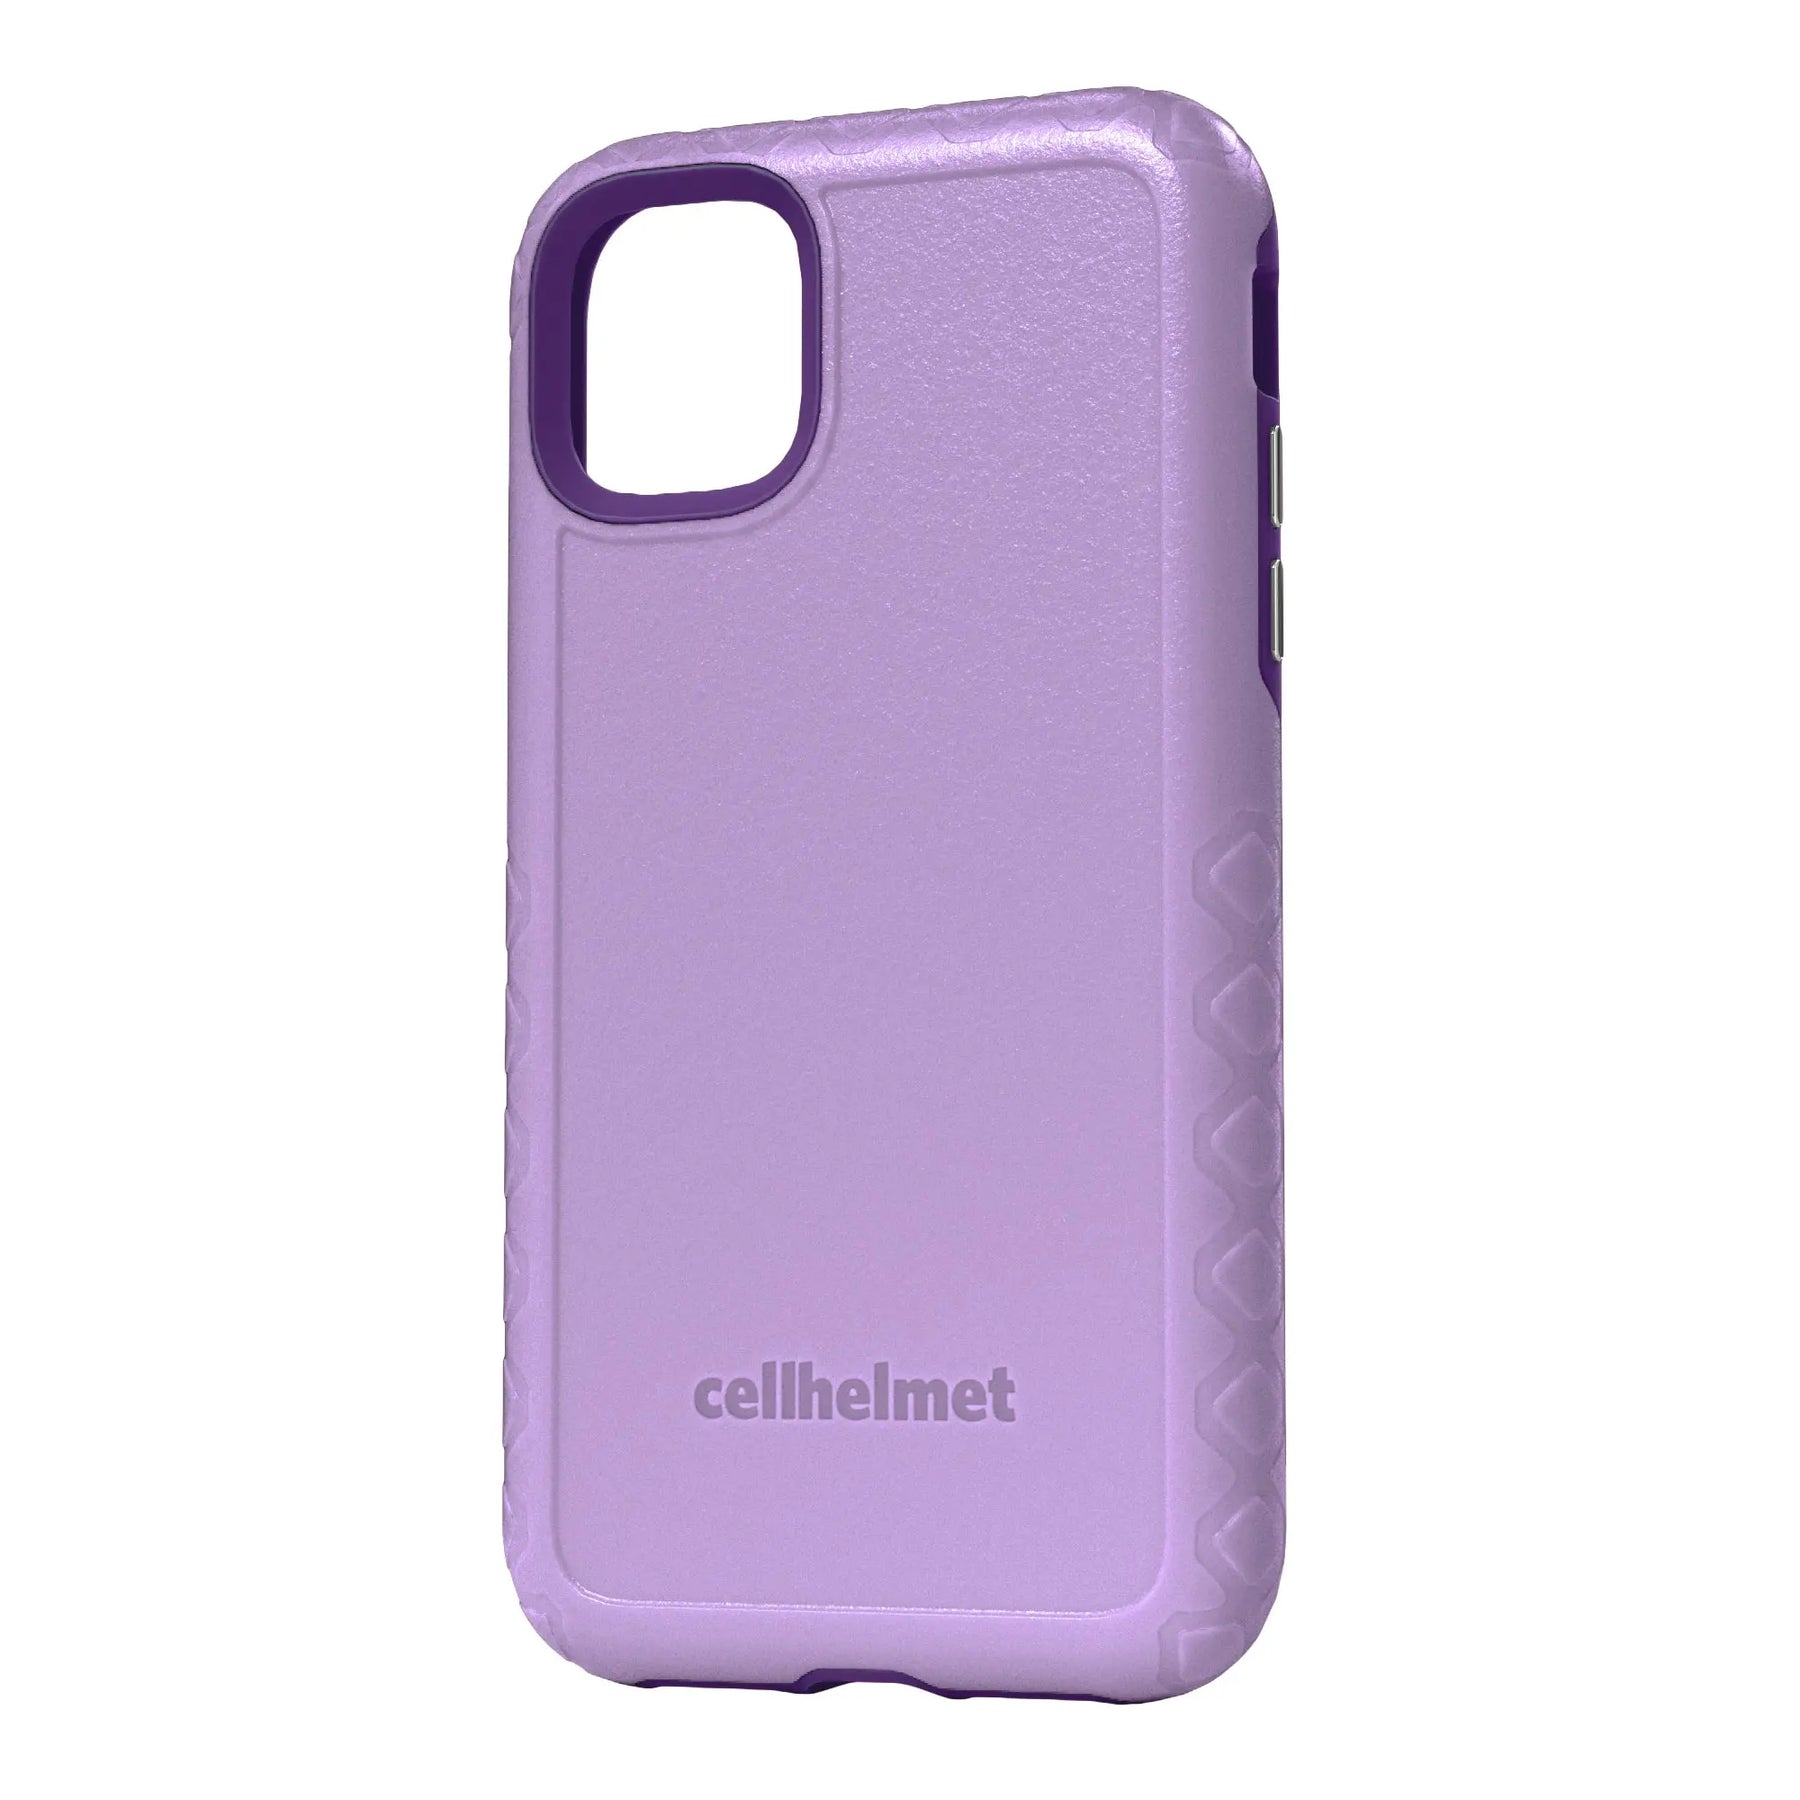 cellhelmet Purple Custom Case for iPhone 11 Pro Max